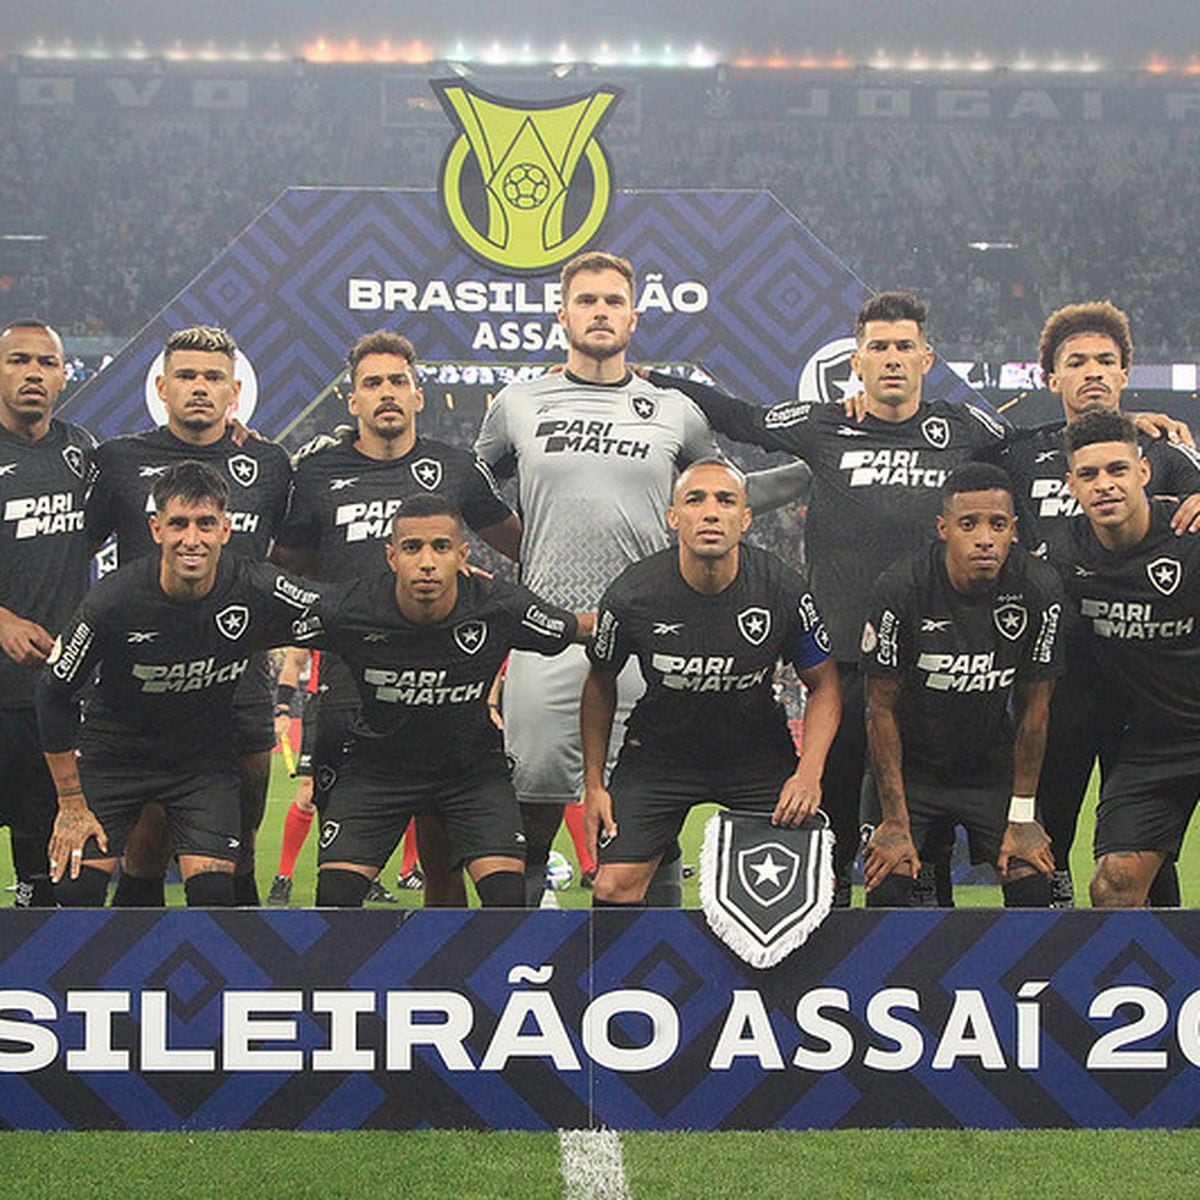 Tabela do Botafogo no Brasileirão 2019: veja todos os jogos do